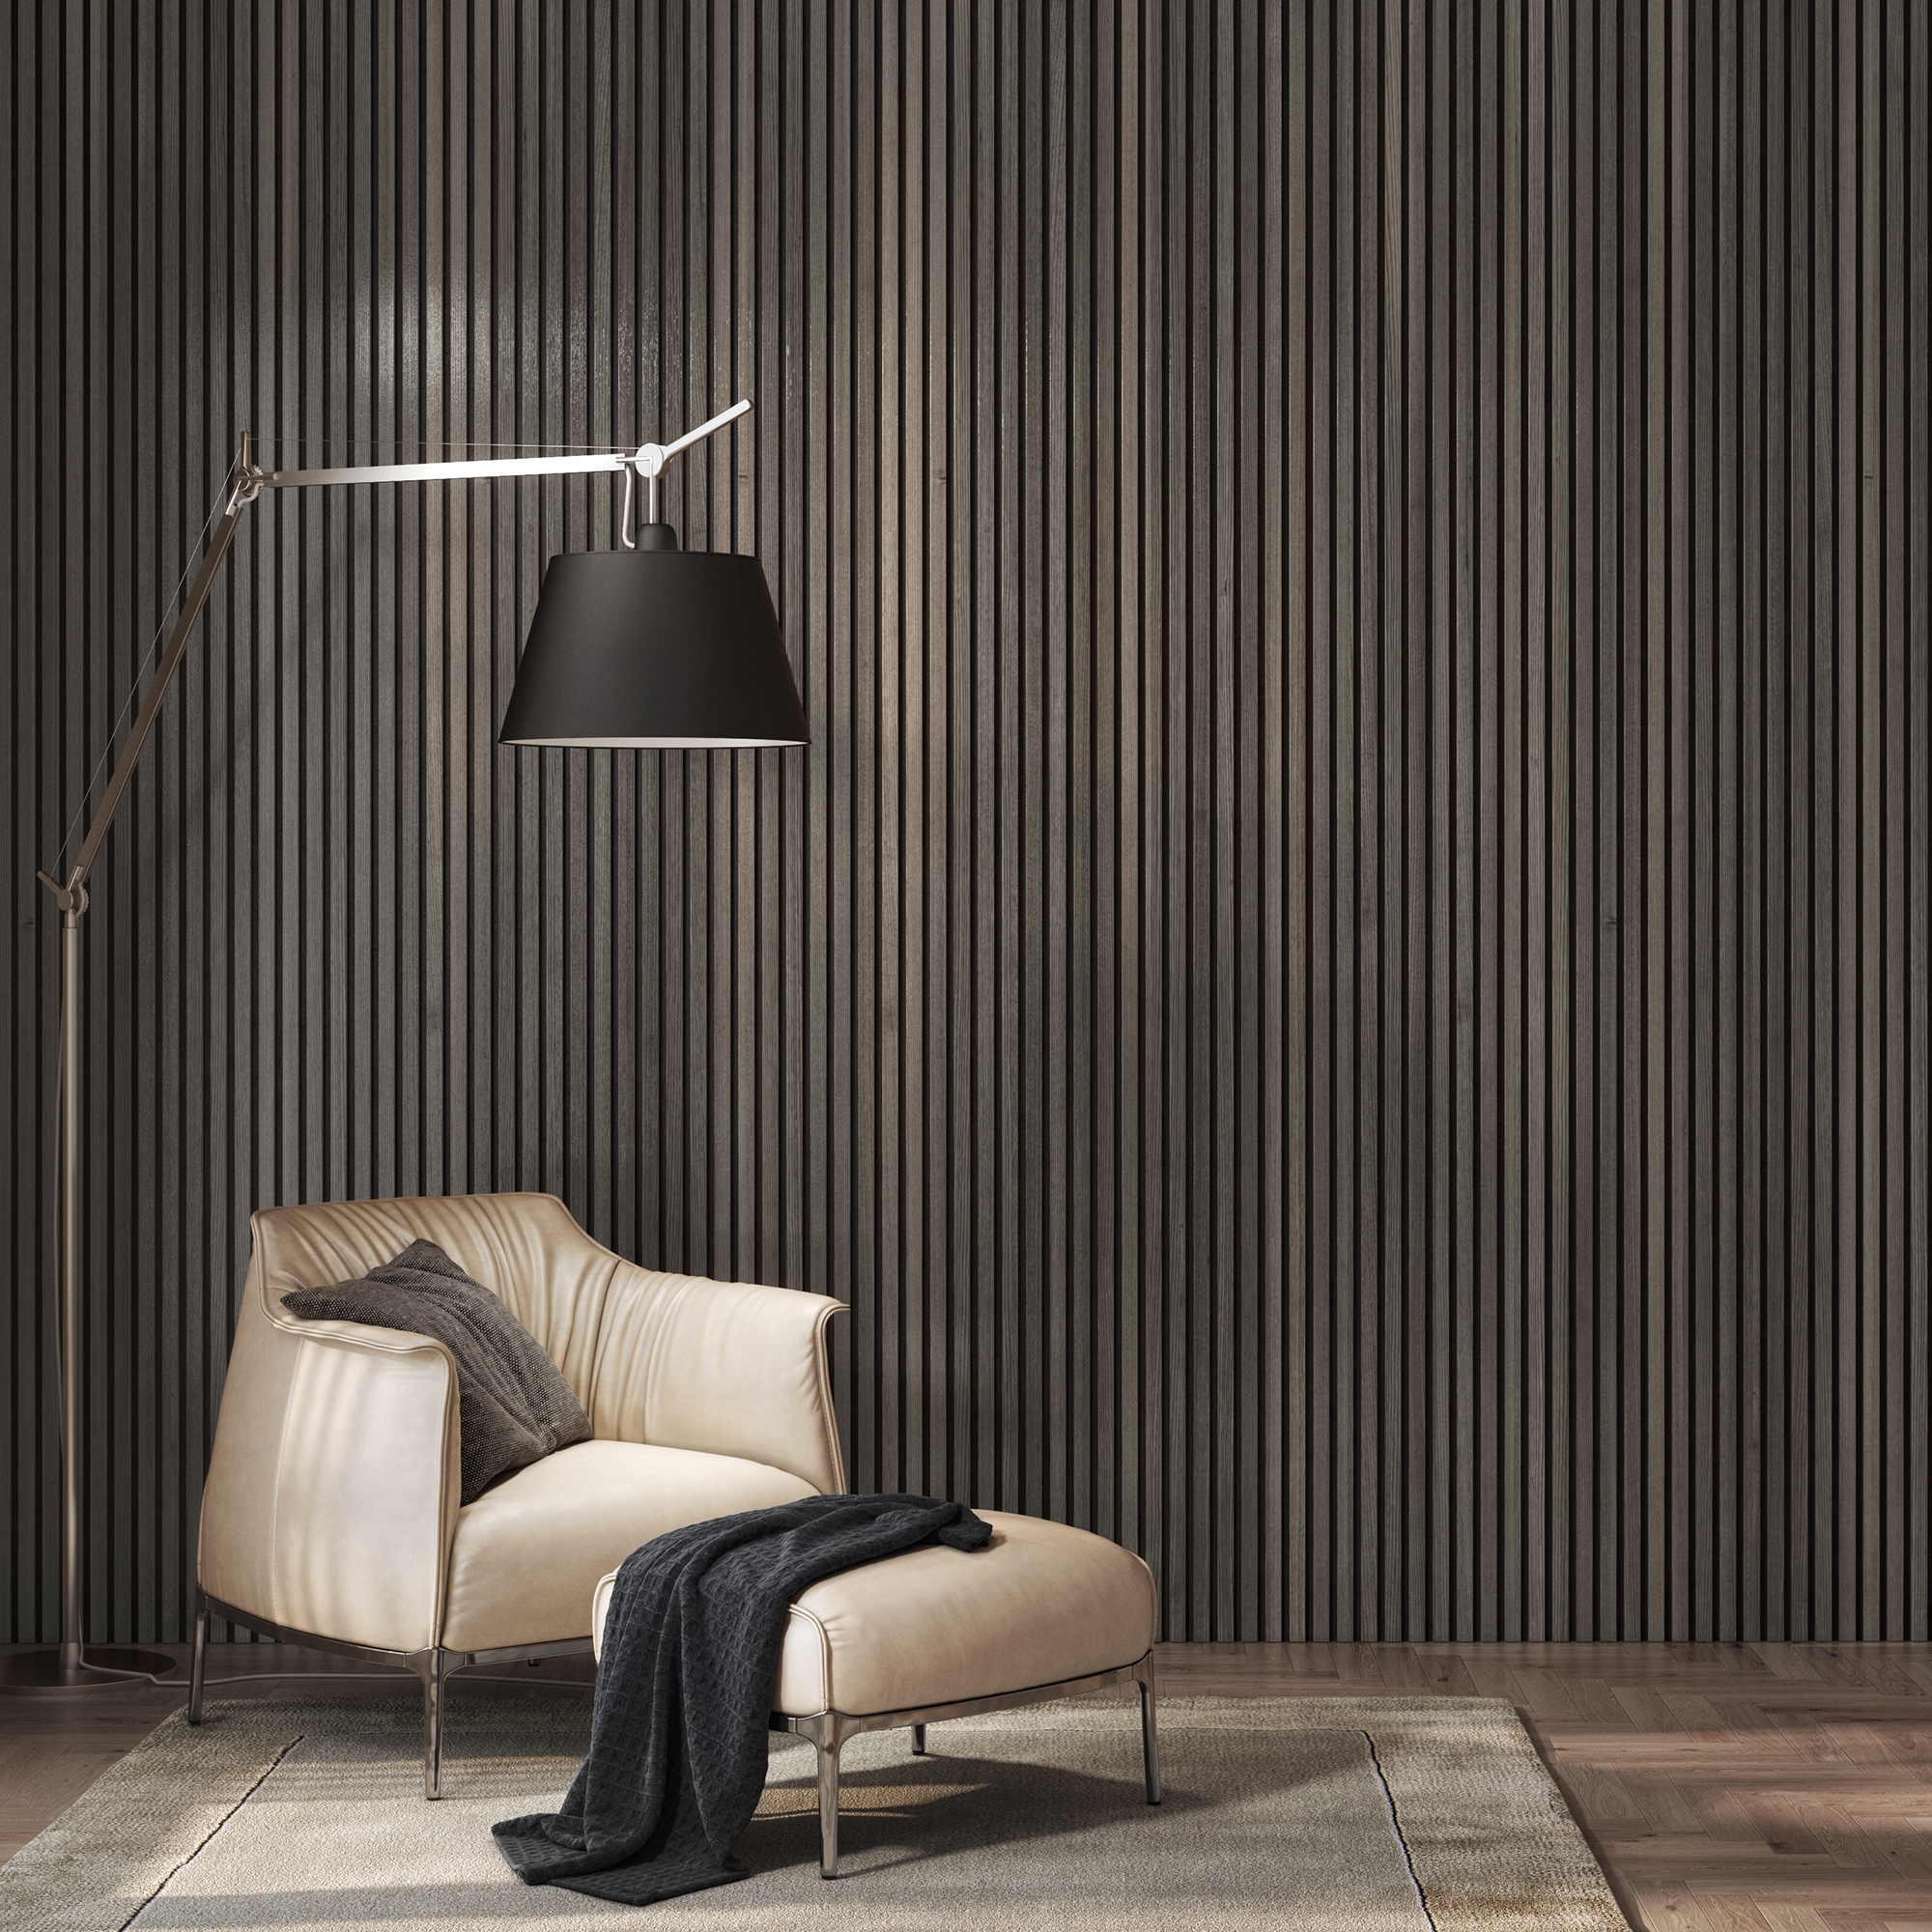 Acoustic Slat Wall Smoked Oak Wall Panel - 22 x 600 x 2400mm